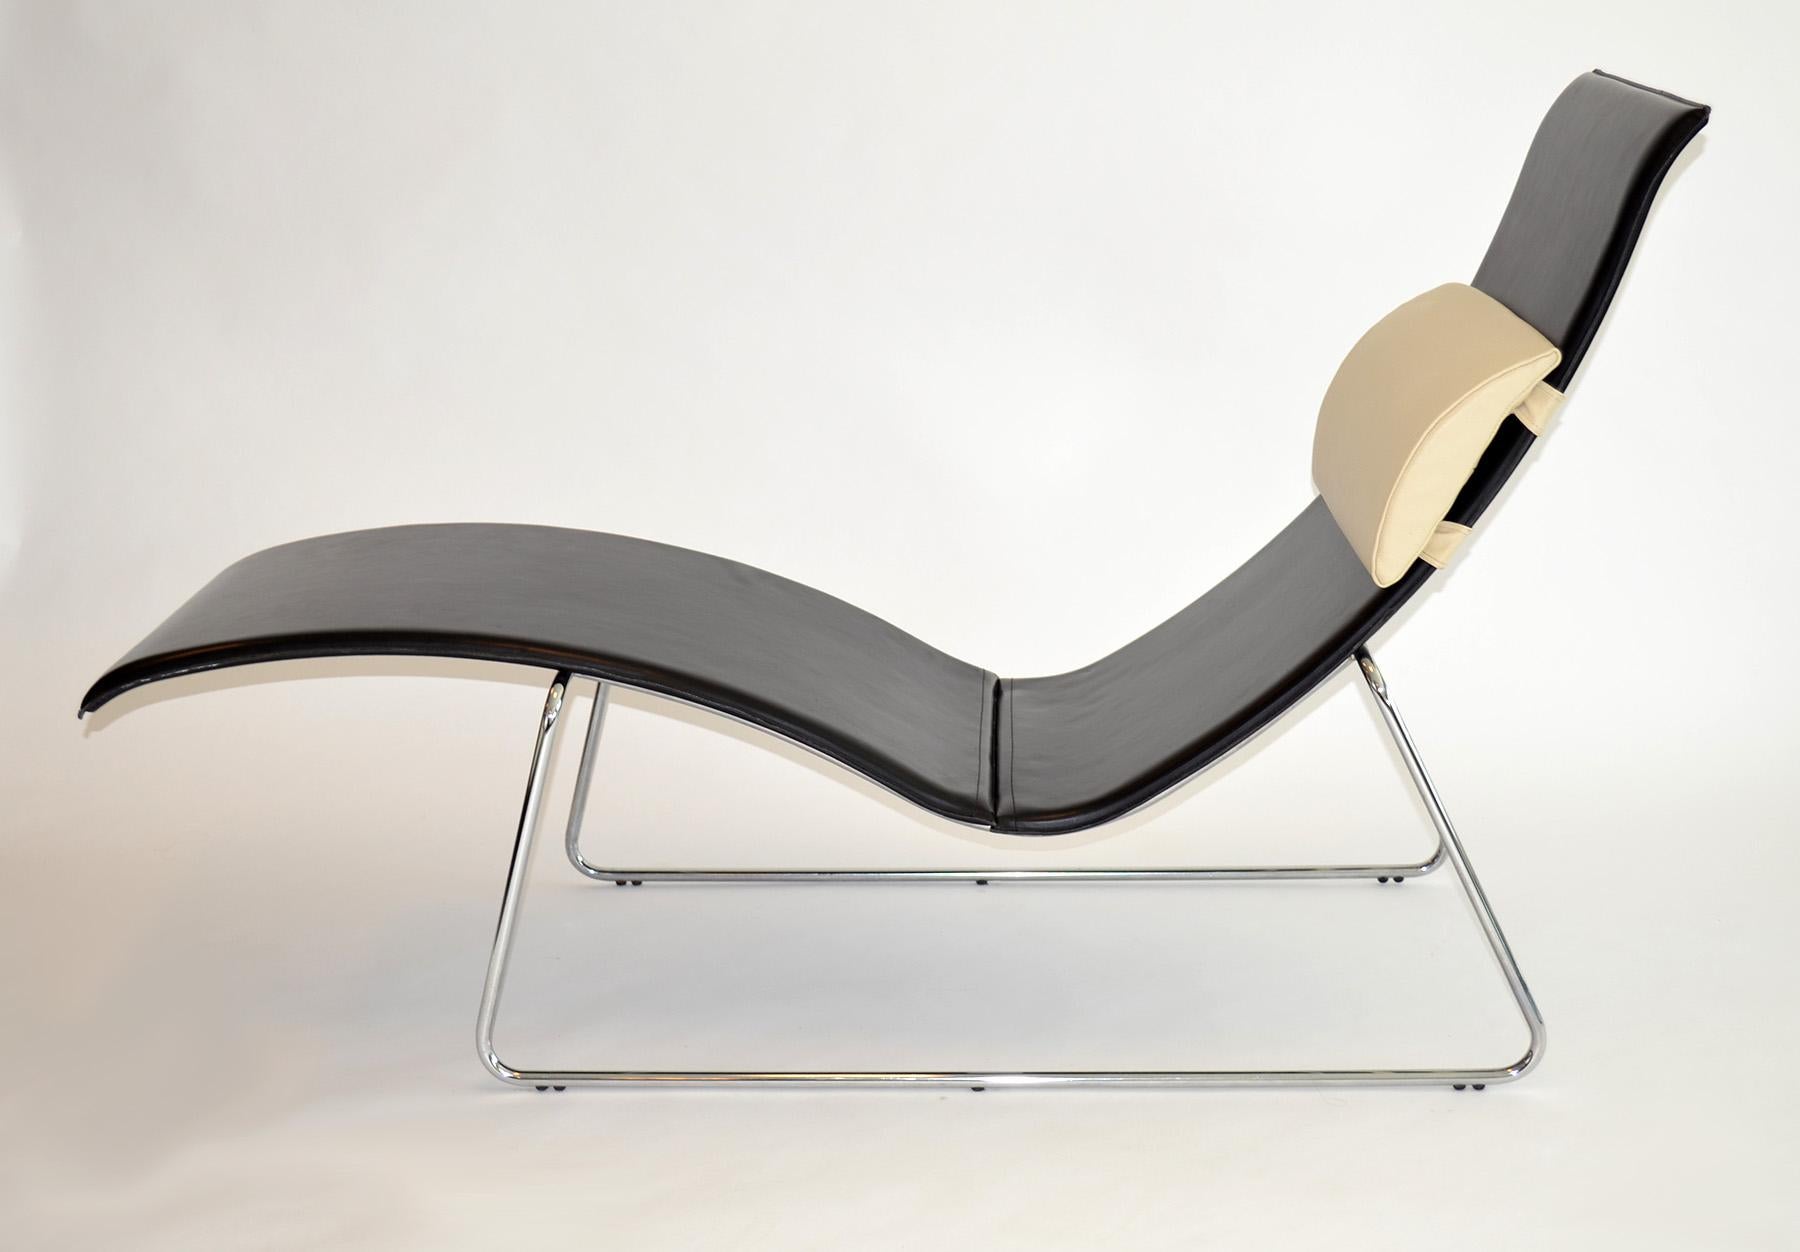 Chaise Longue ou Lounge Chair en cuir noir sur base en acier 1990's Italie
Profil fin et épuré avec un long couché en cuir noir épais cousu de qualité sur une base minimaliste en acier chromé avec un coussin blanc cassé. Probablement du cuir sur du